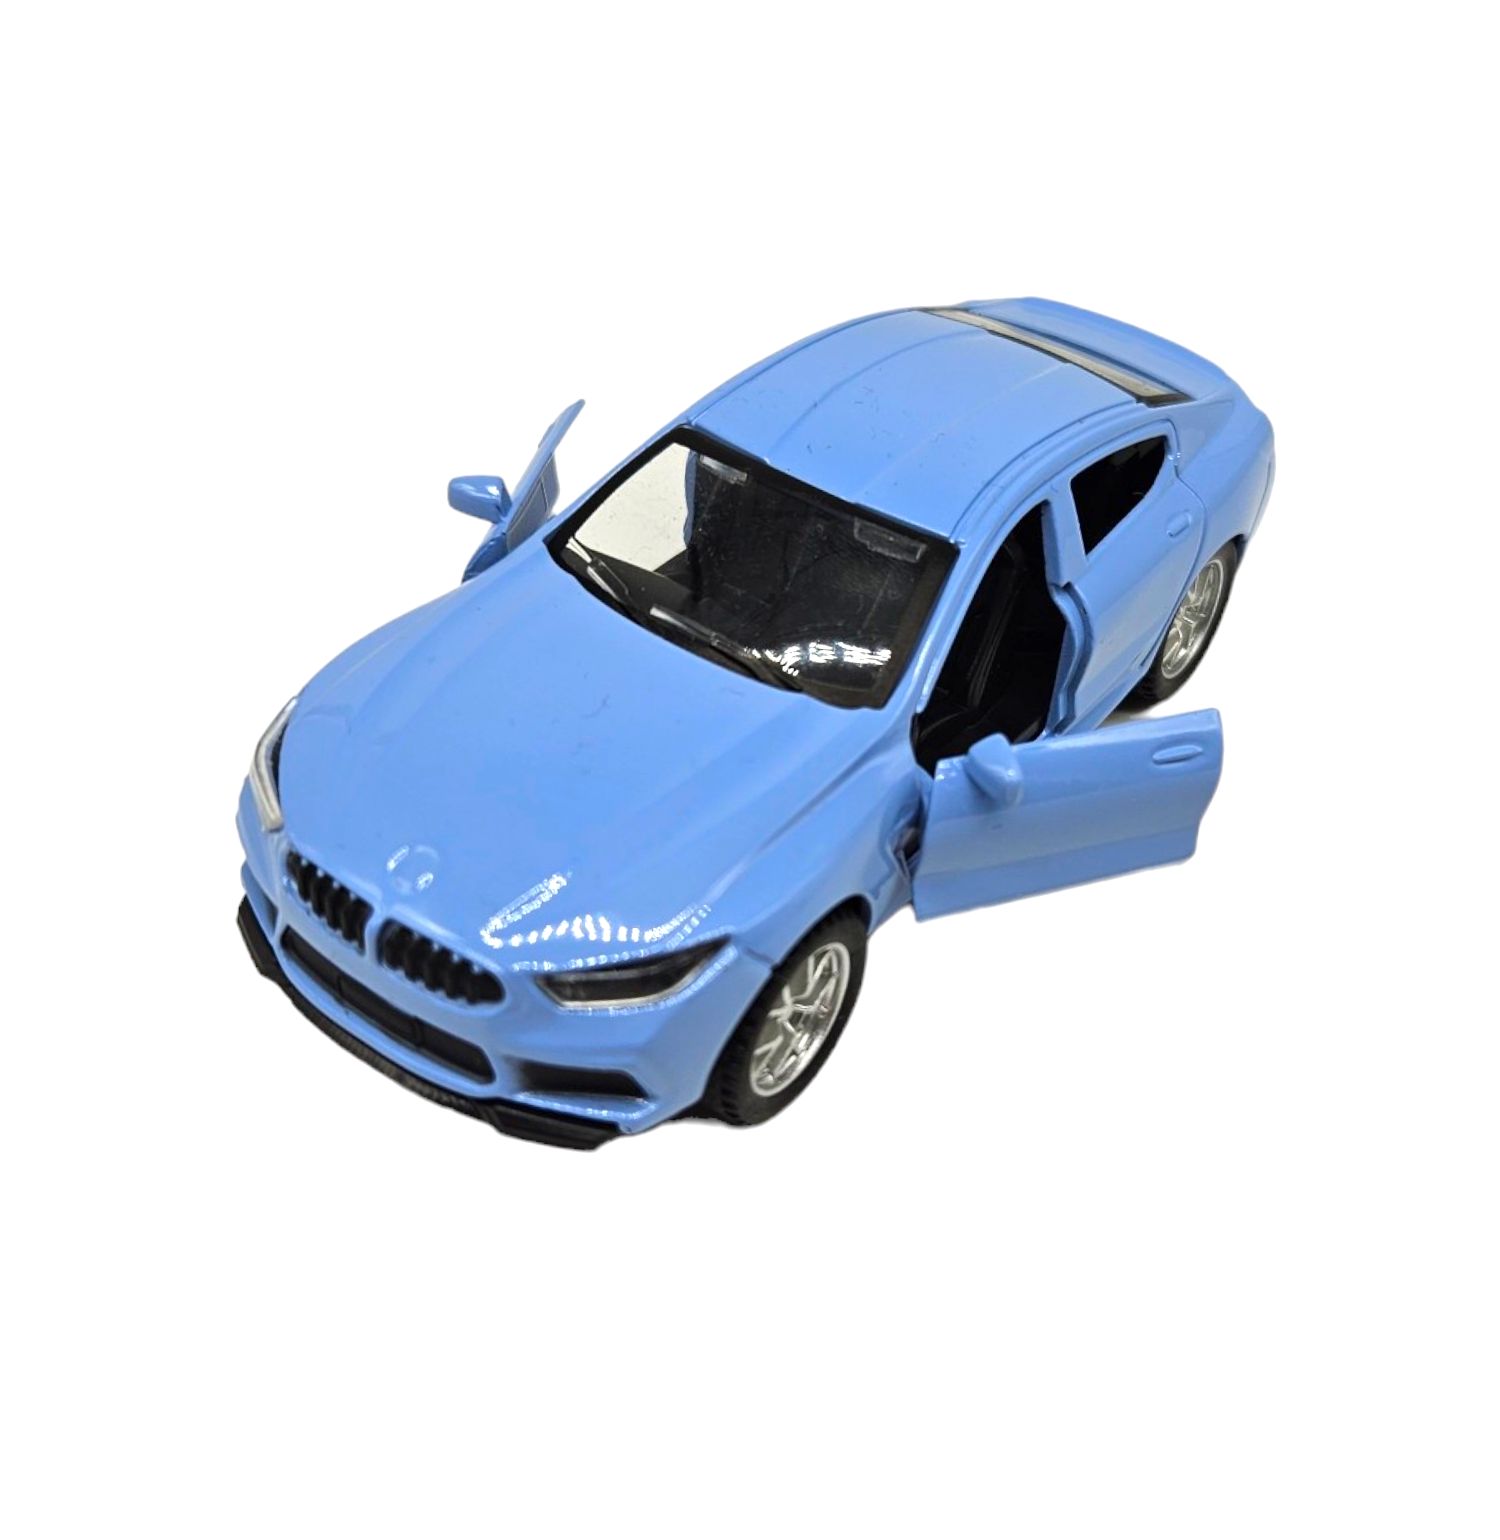 Masinuta metalica BMW,Usi mobile,Albastru deschis, Scara 1:32, 11cm